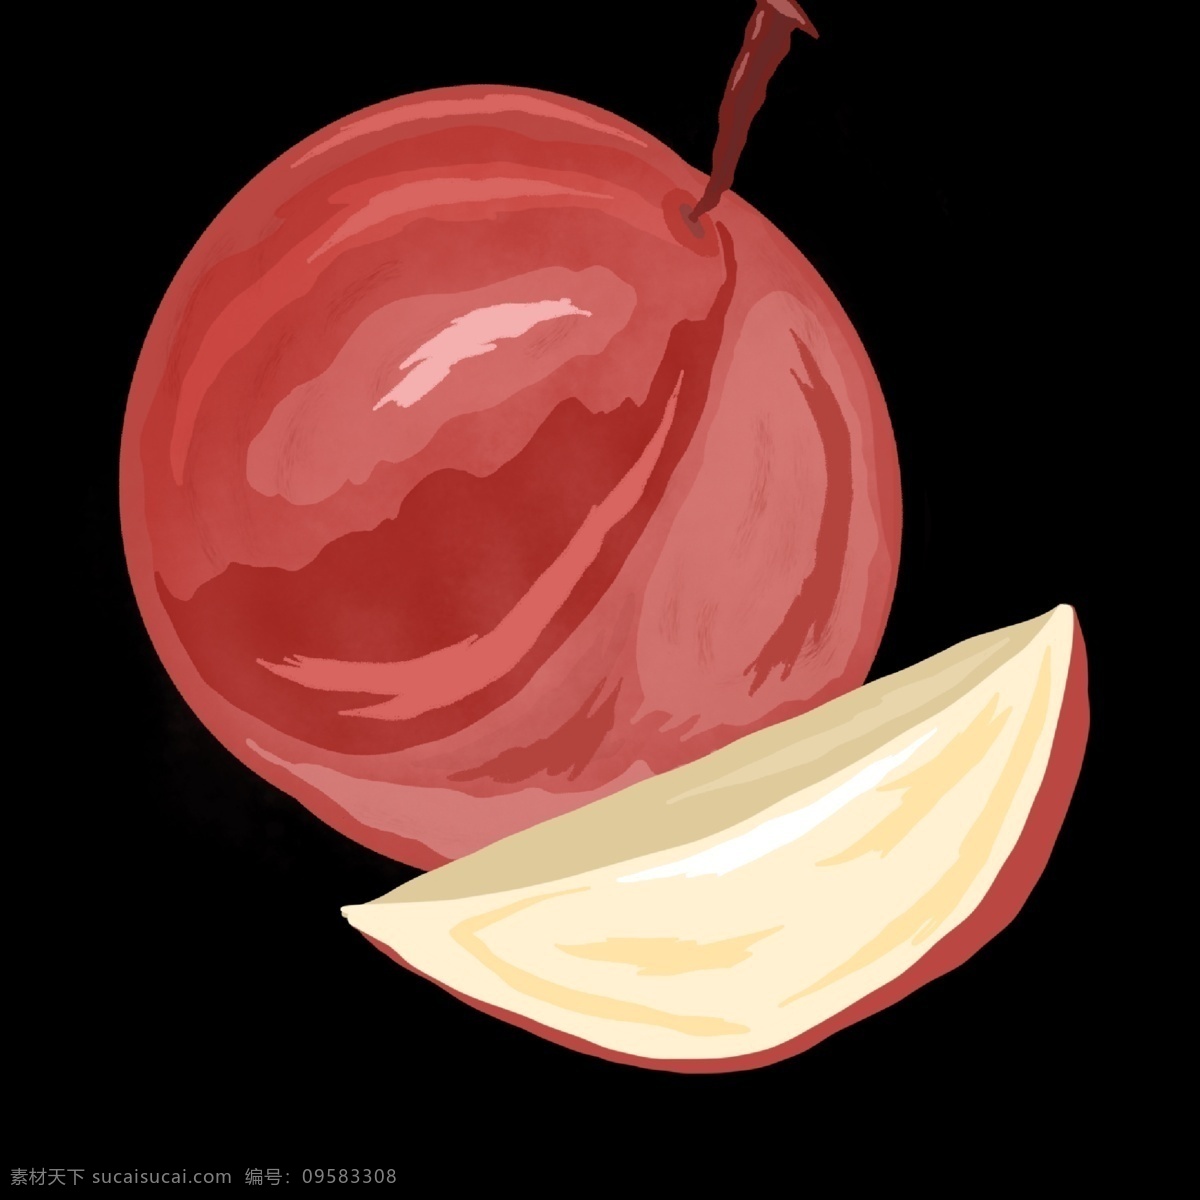 切开 美味 桃子 插画 水果插画 创意桃子 桃子水果 桃子切面 卡通桃子 美味的桃子 桃子插图